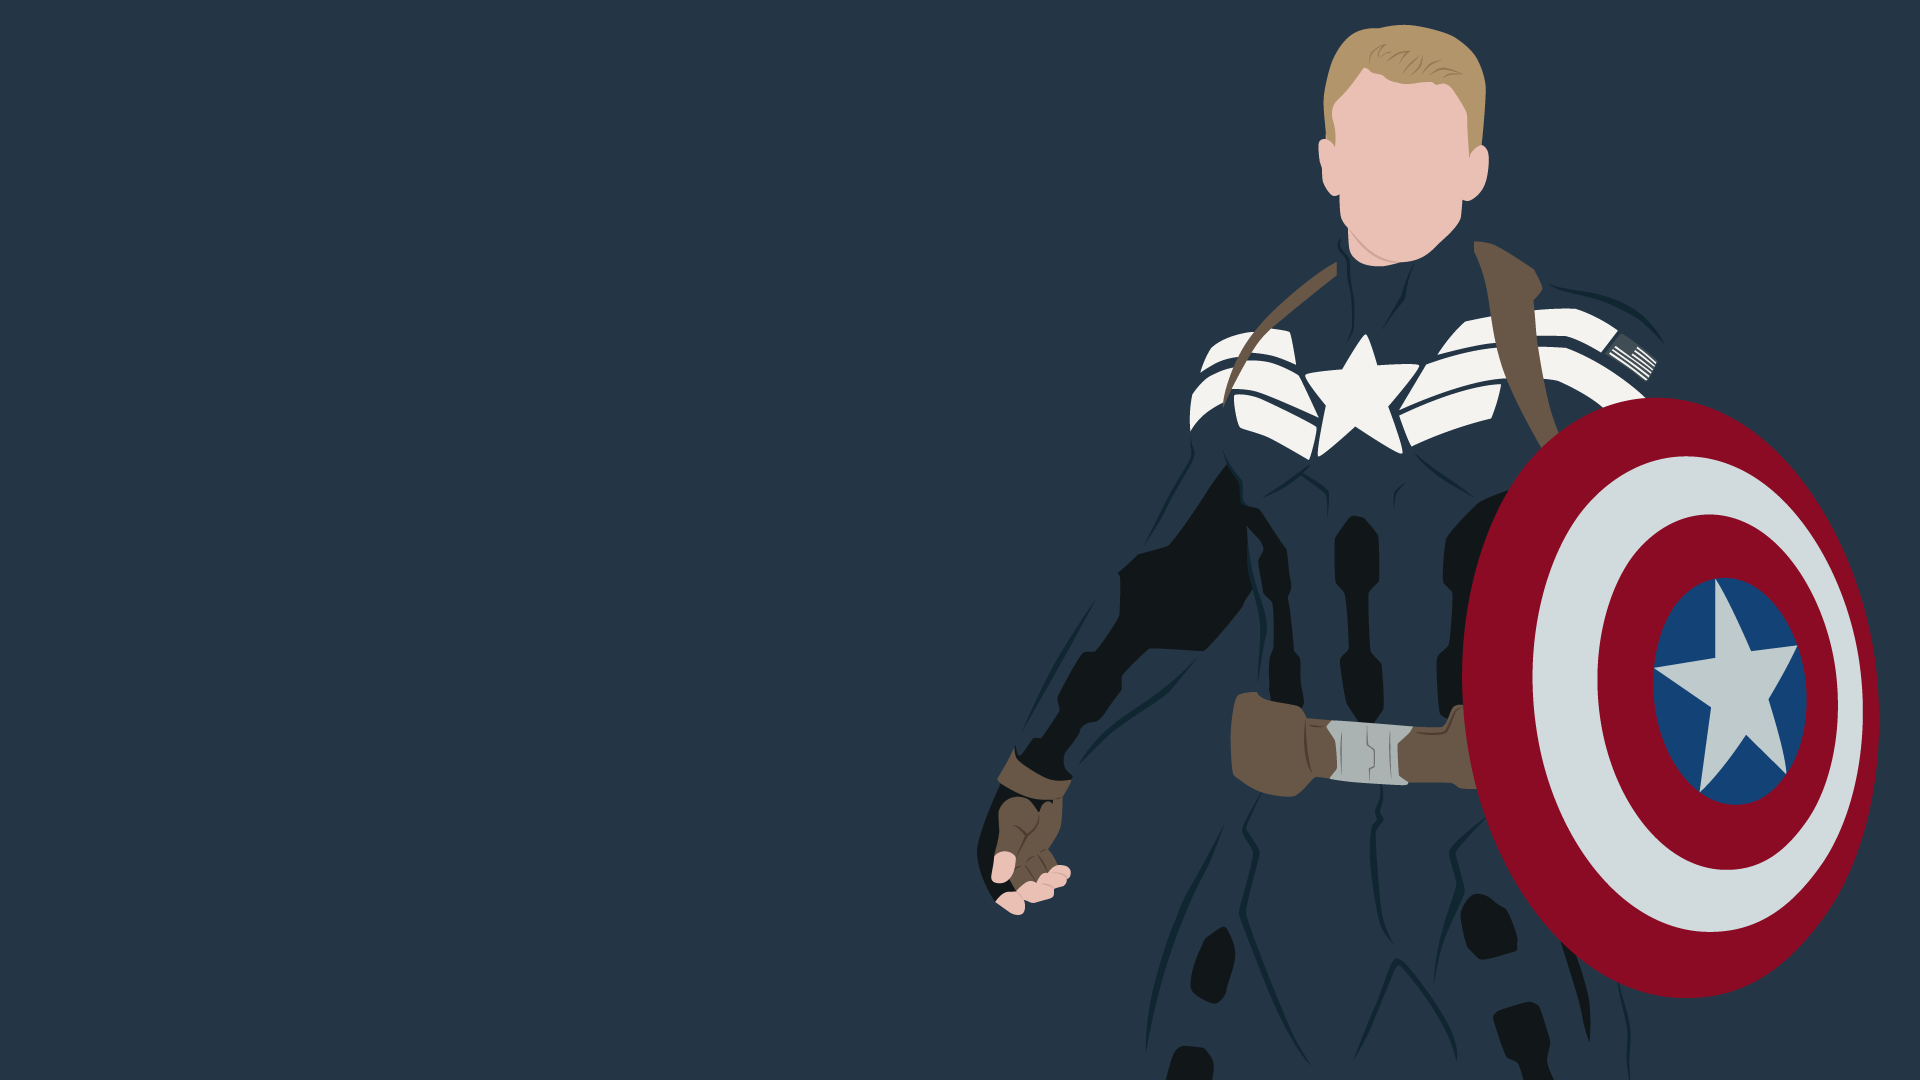 Captain America Wallpaper For Desktop Le Fandoms